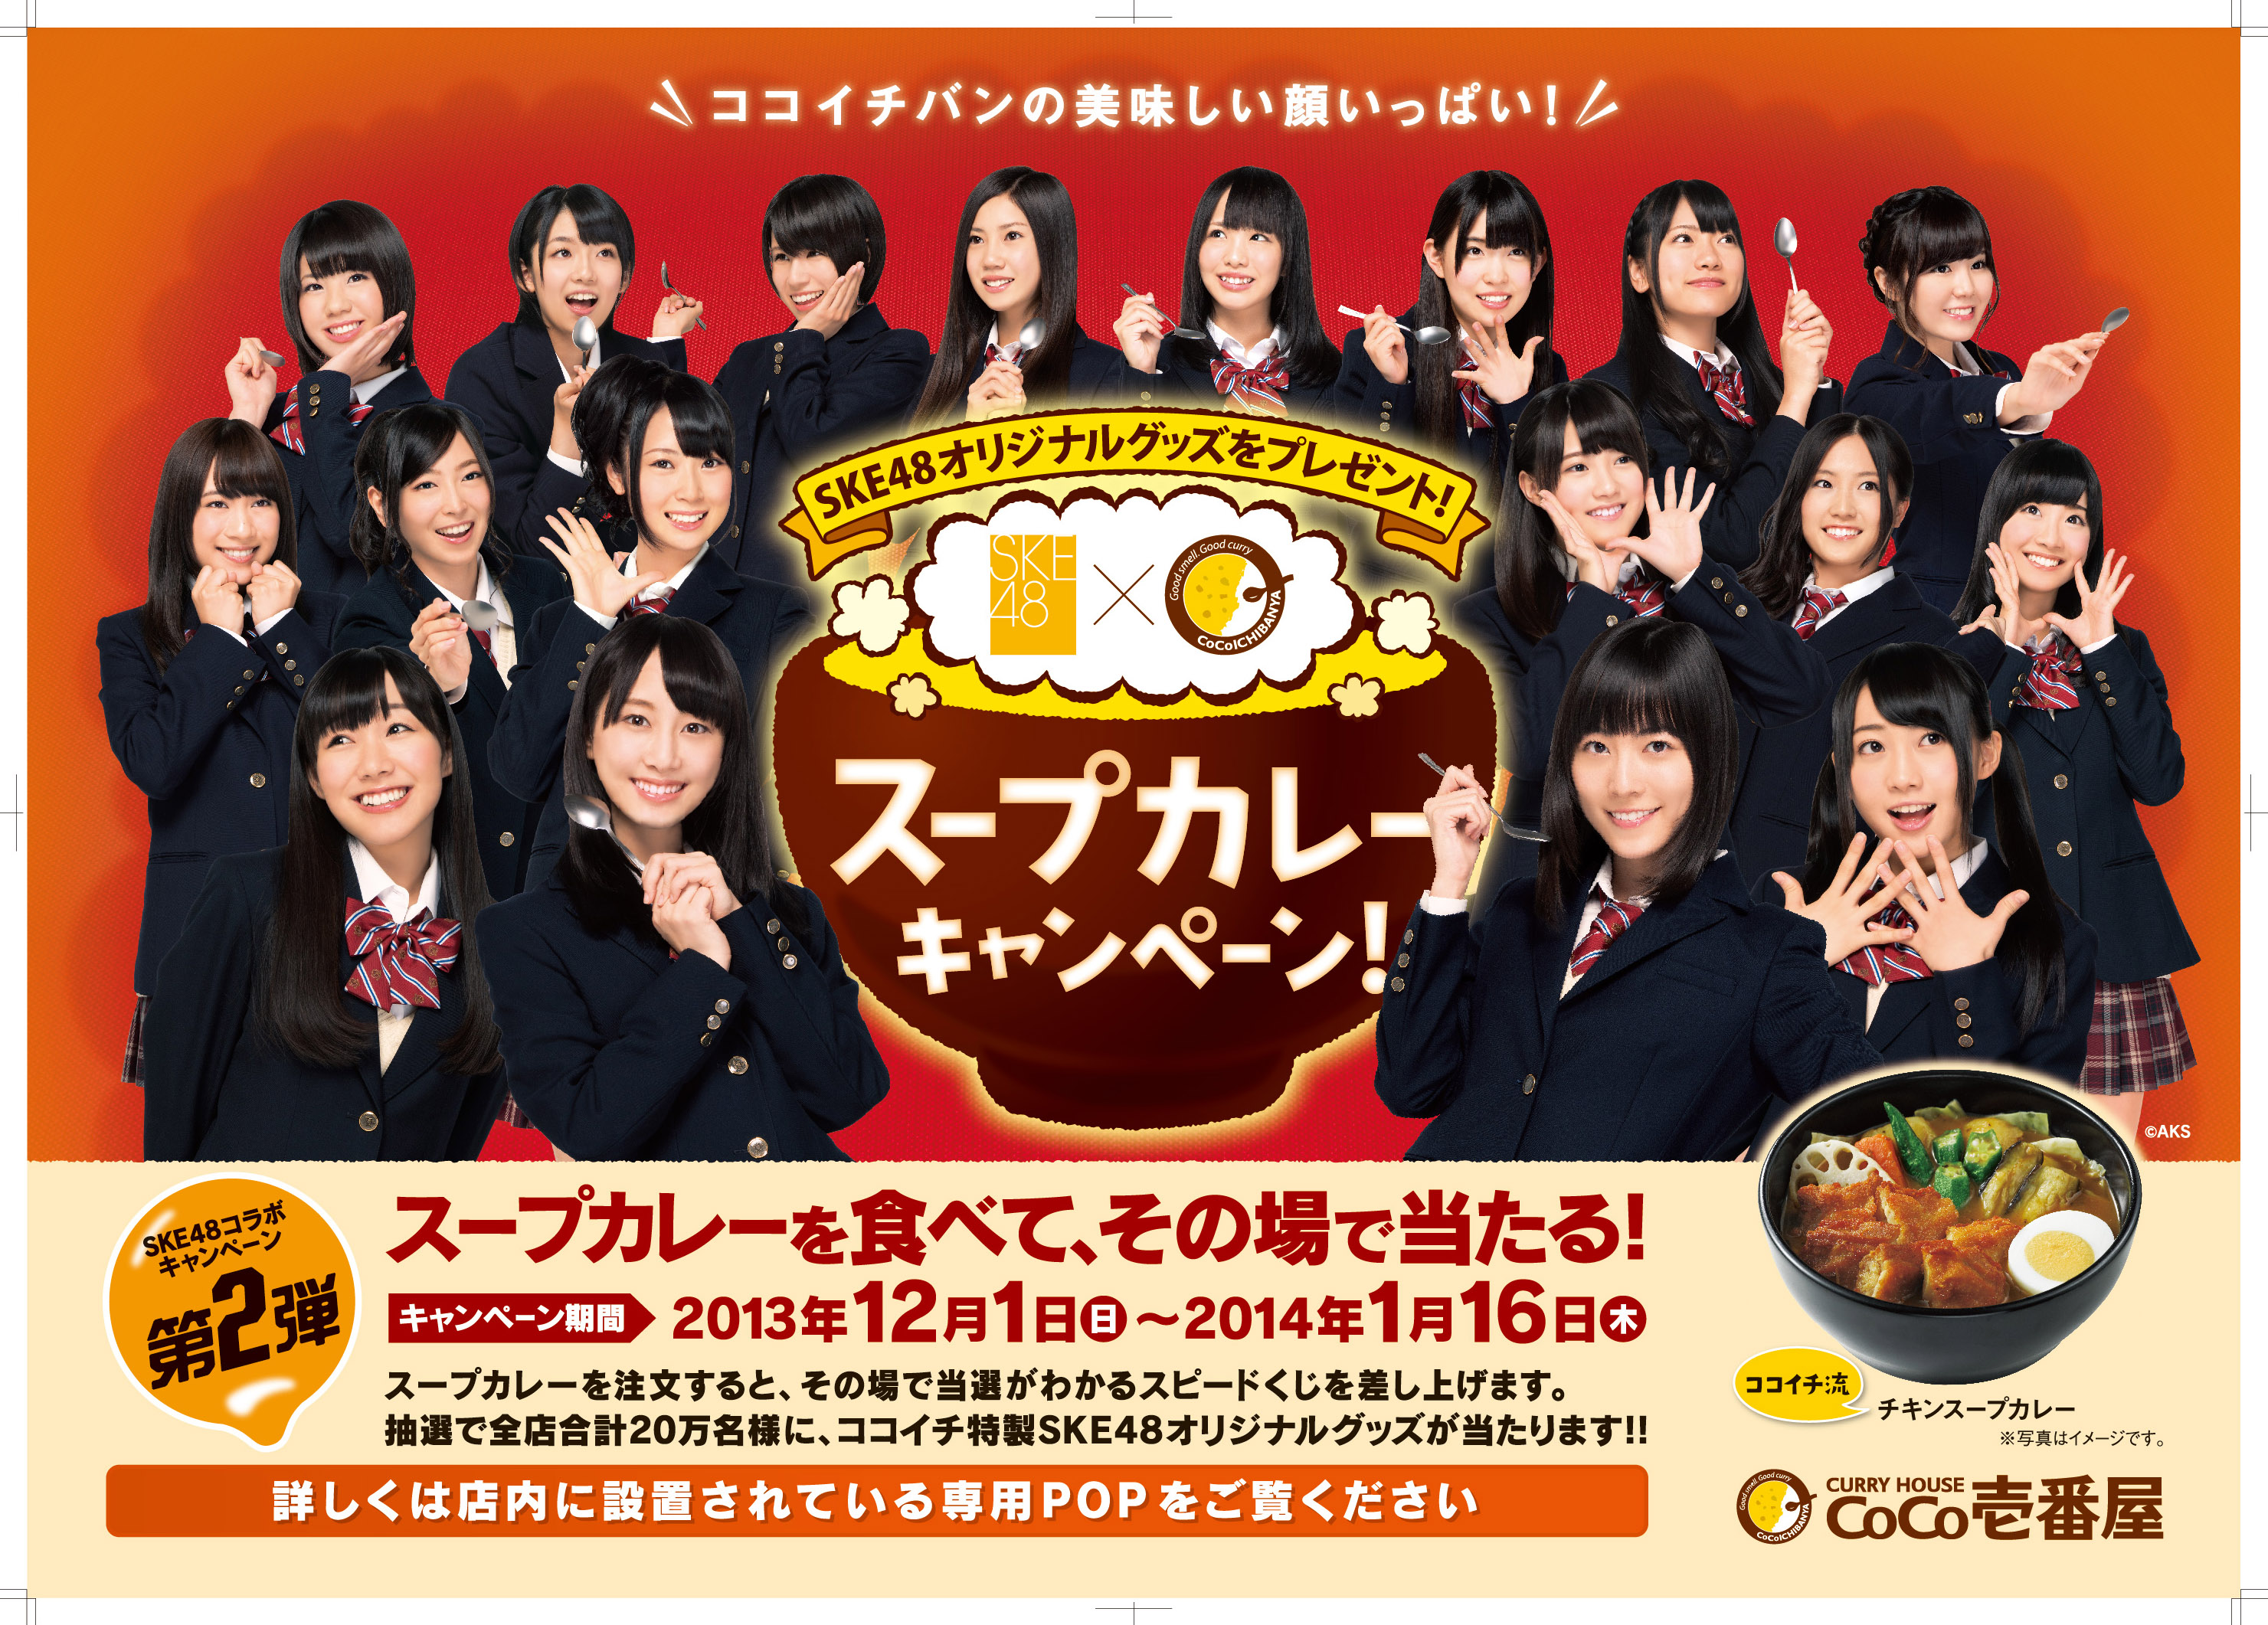 CoCo壱番屋 × SKE48「推しトッピン具対決!!」キャンペーンのイメージ 1